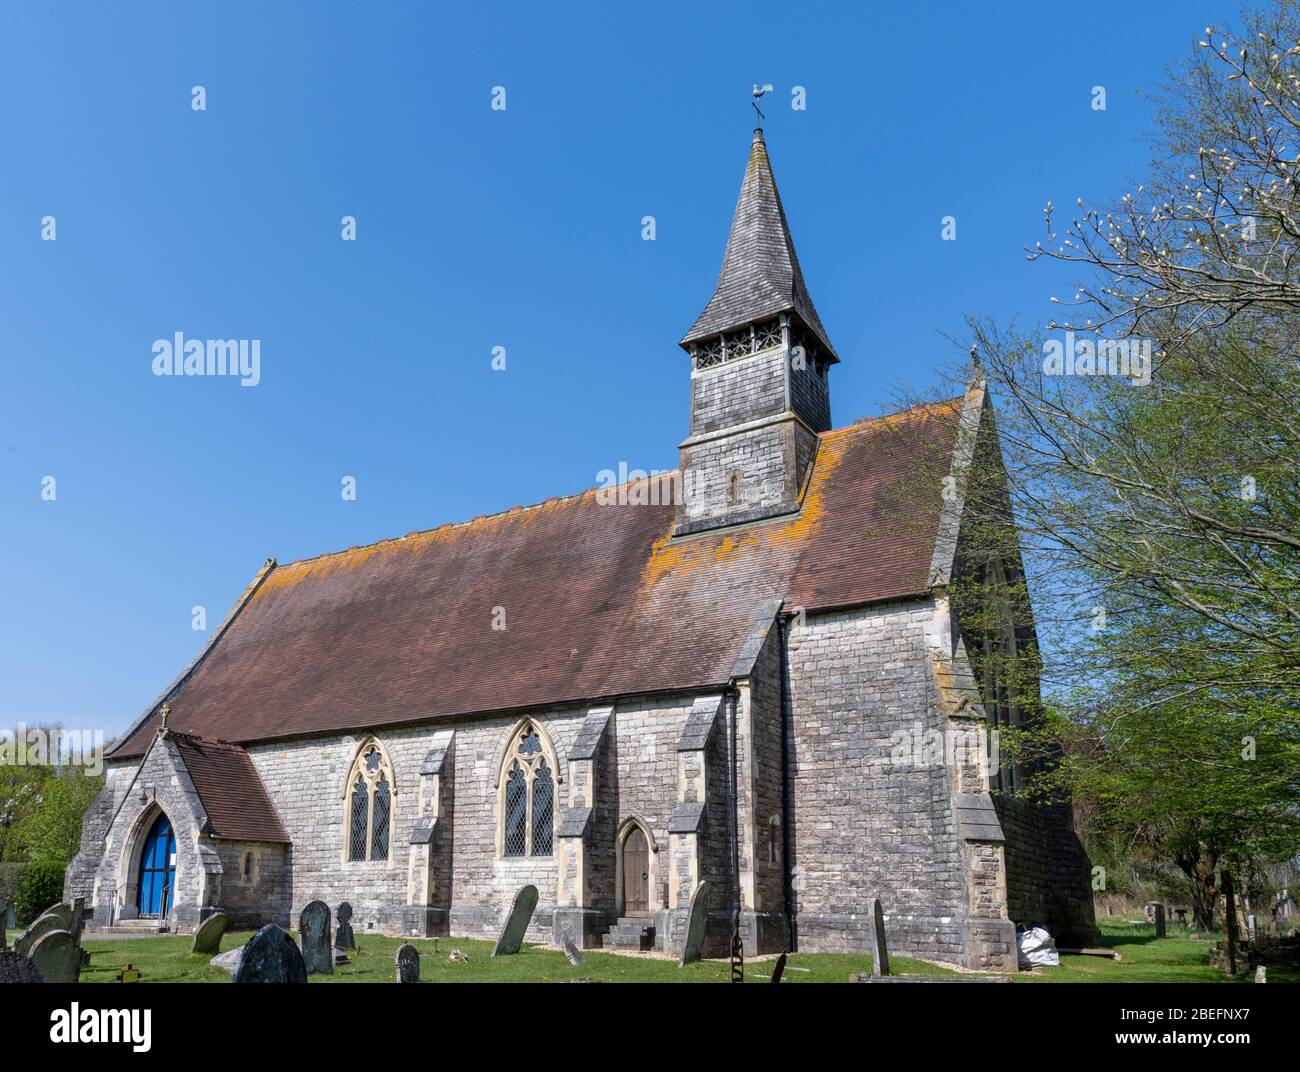 St Matthews chiesa parrocchiale del villaggio di Netley Marsh, Hampshire, Inghilterra, Regno Unito Foto Stock